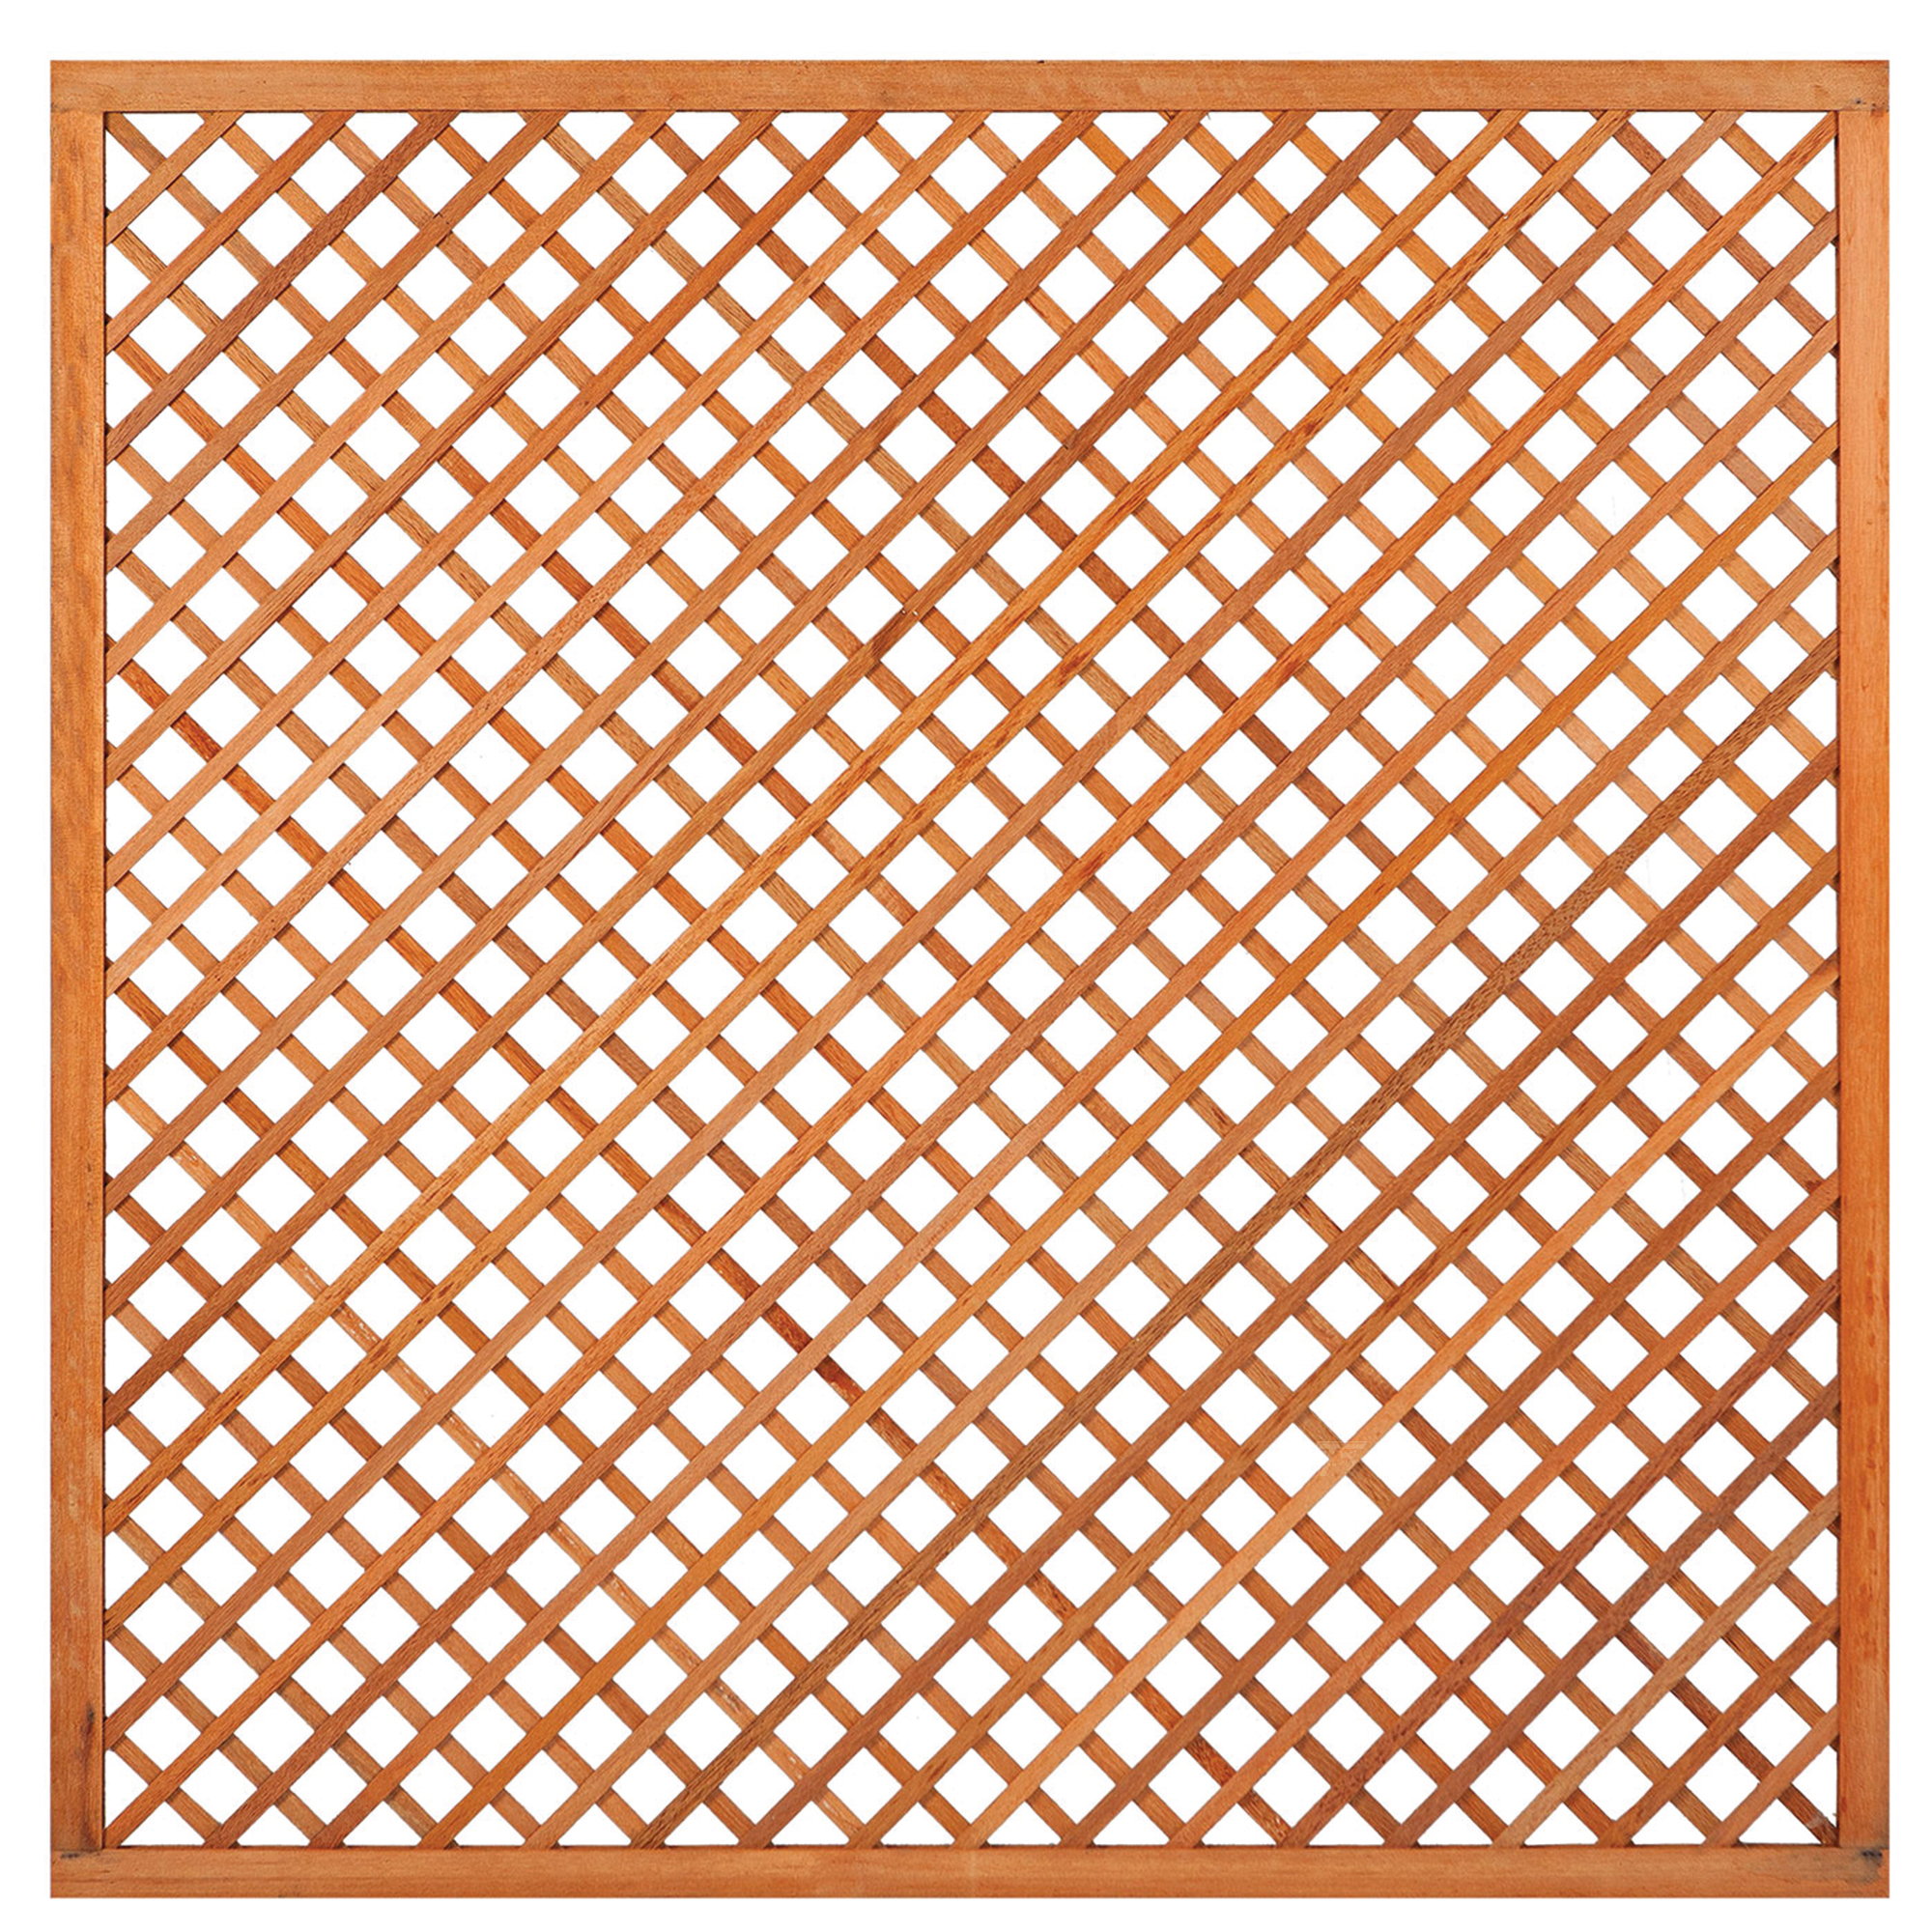 Spalier diagonal mit Rahmen, Hartholz, 40cm